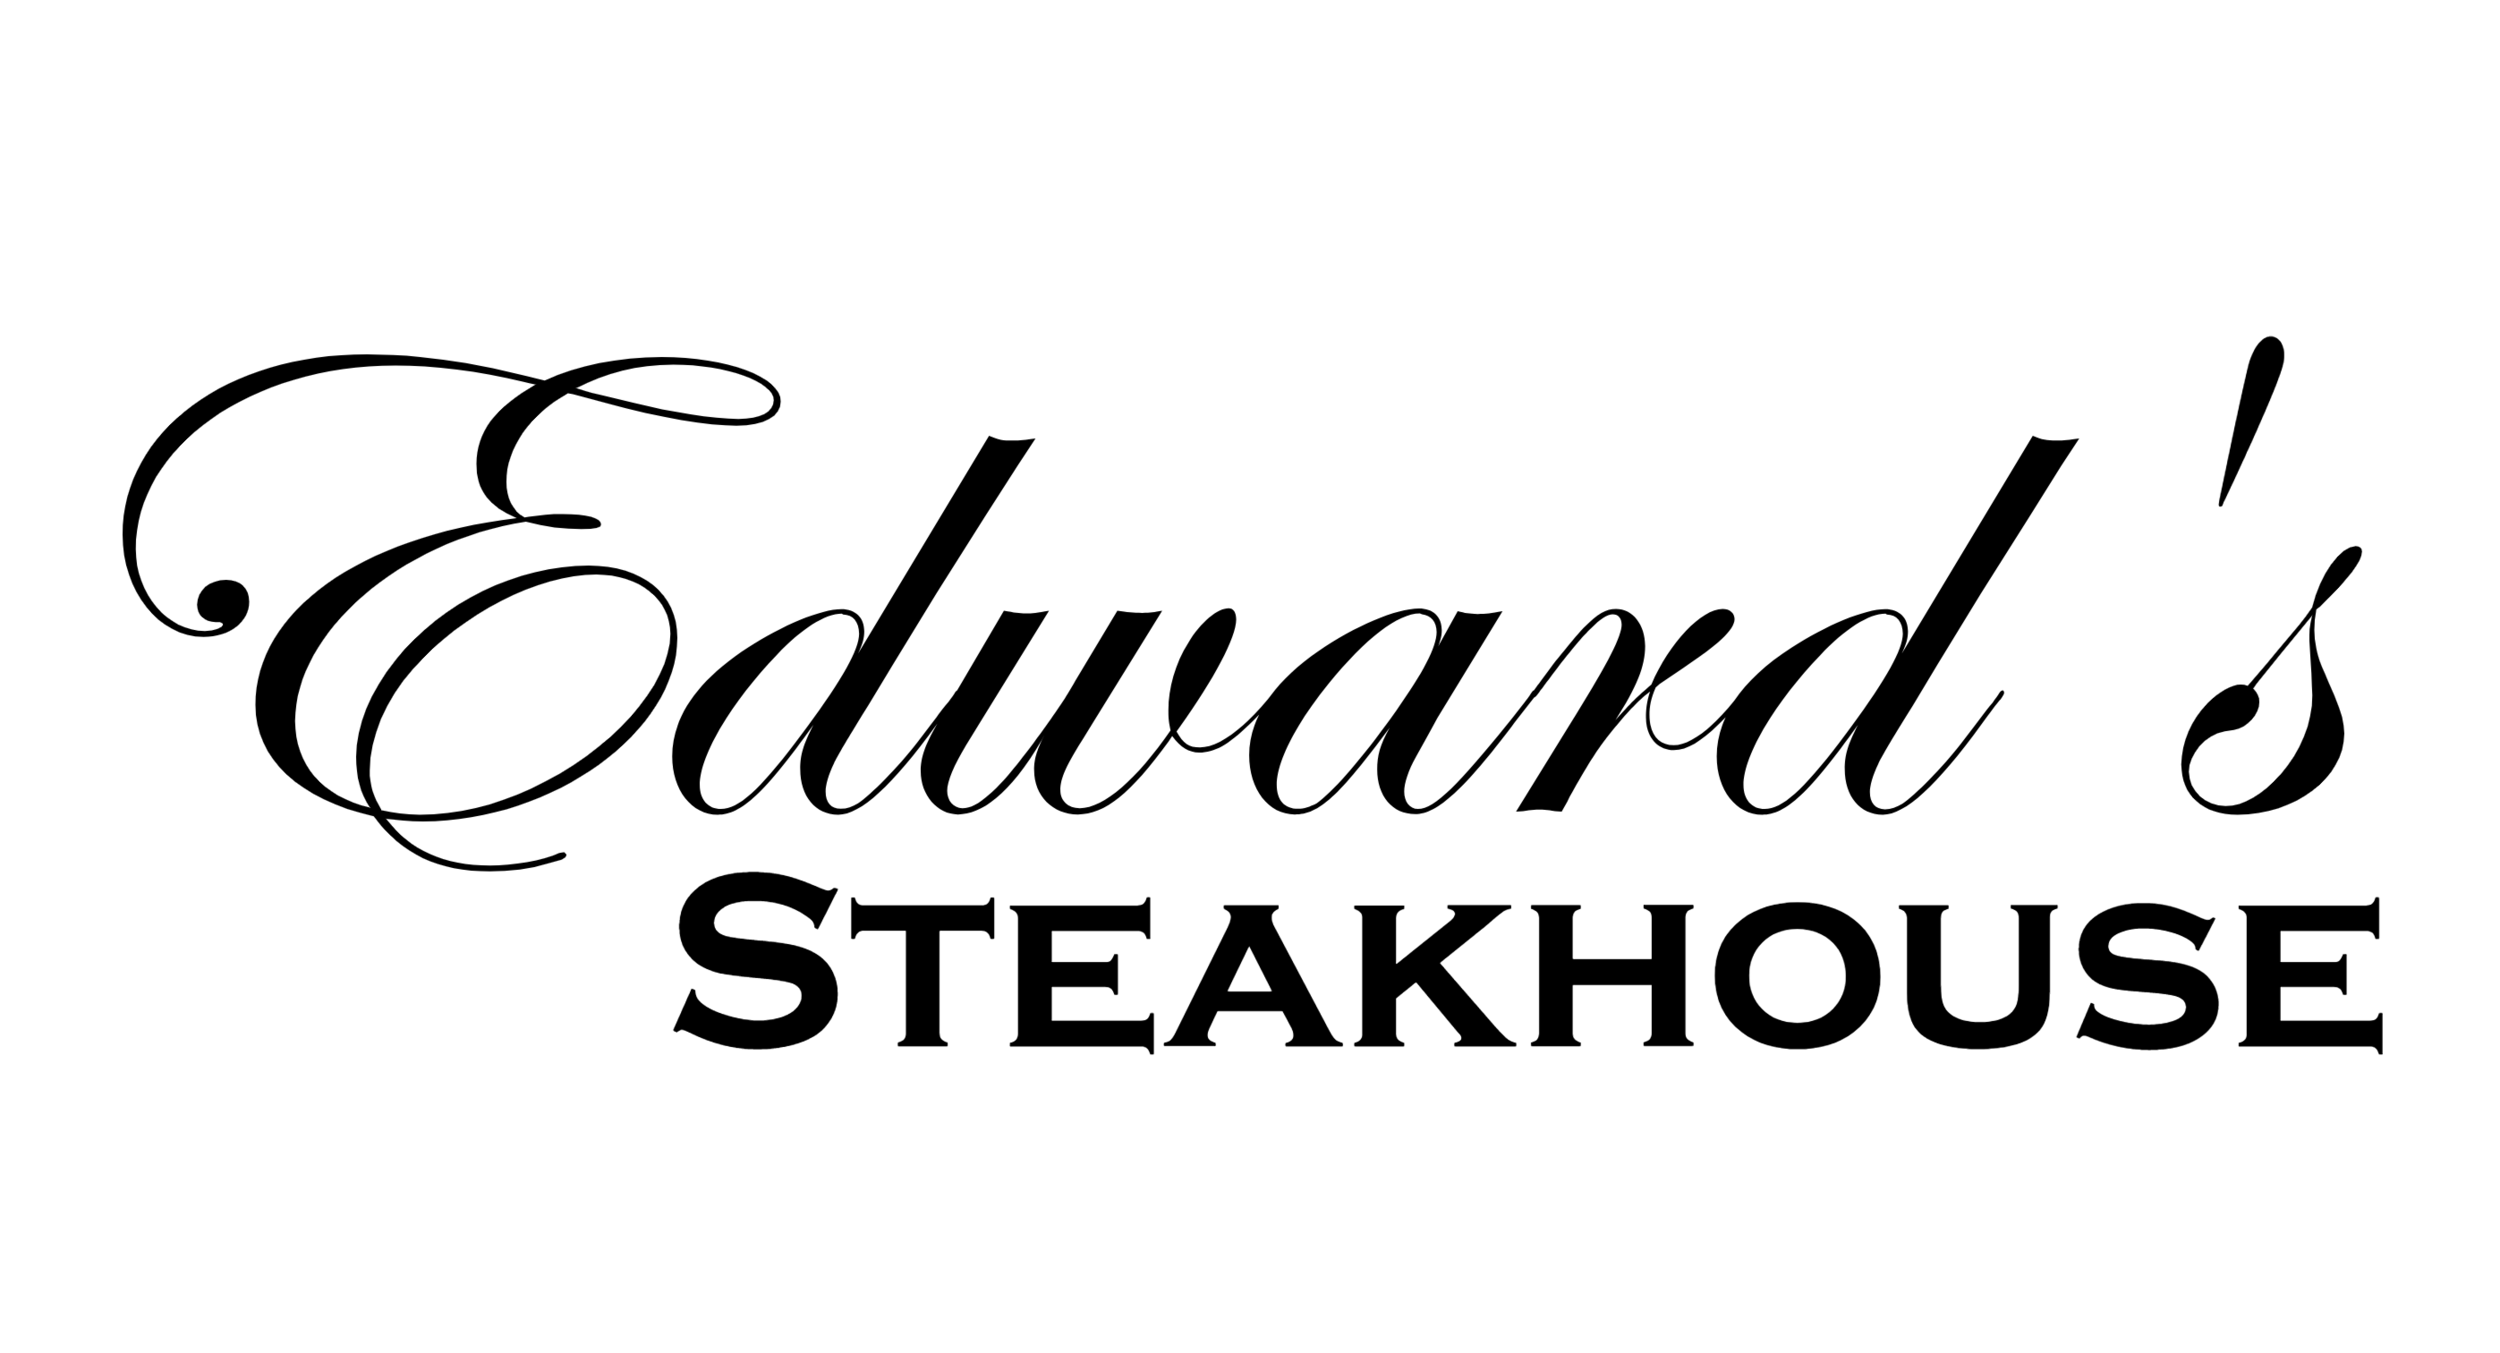 Edwards Steakhouse